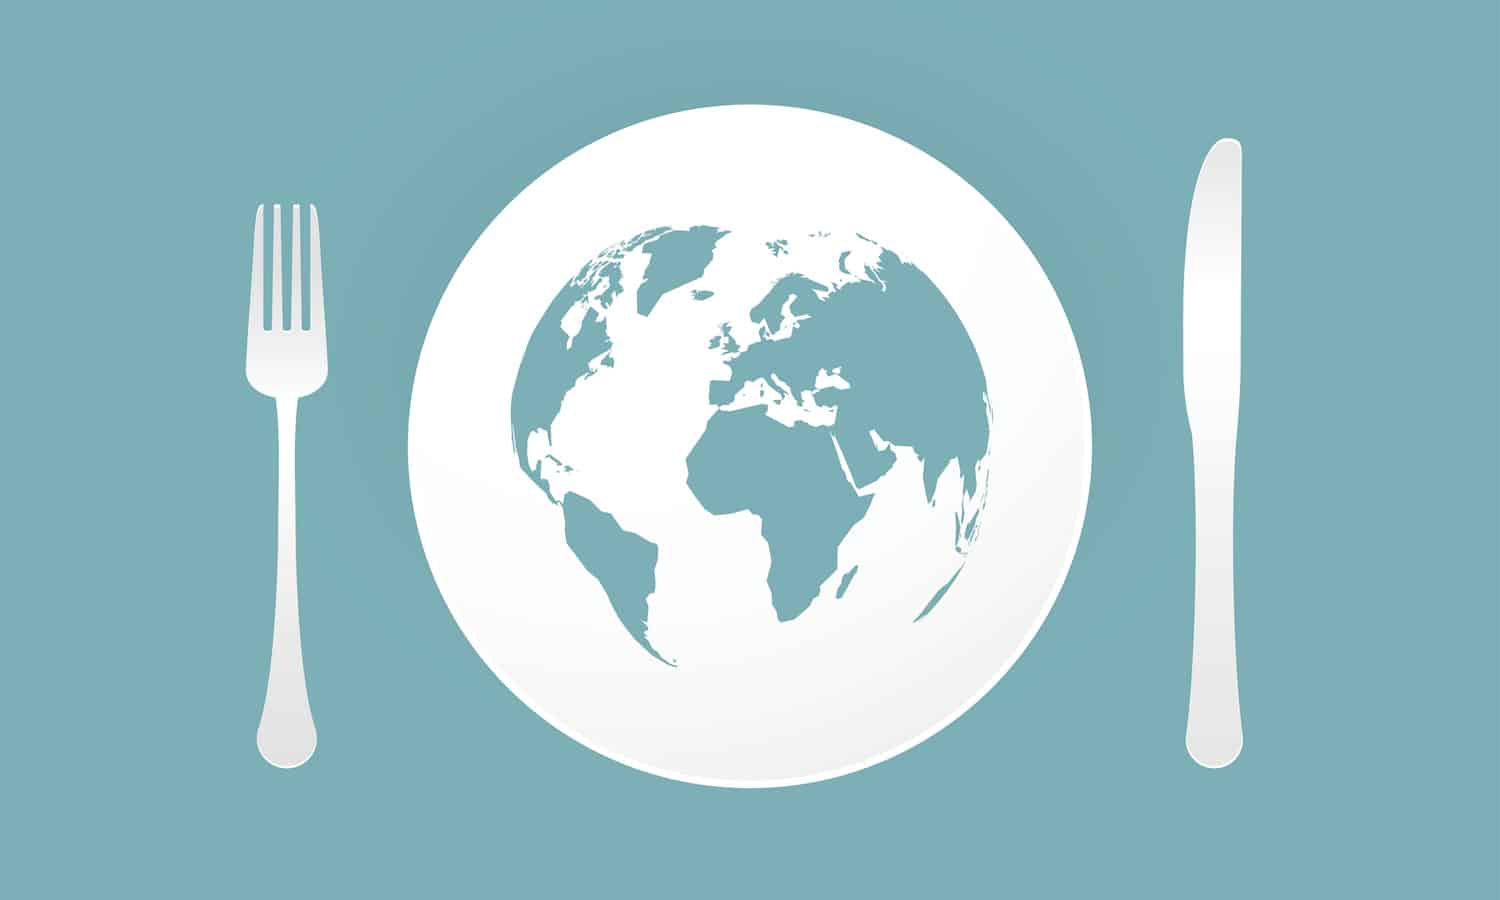 M.J.奥特曼说主编美国在世界粮食计划署的想法减少全球饥饿和食物浪费。